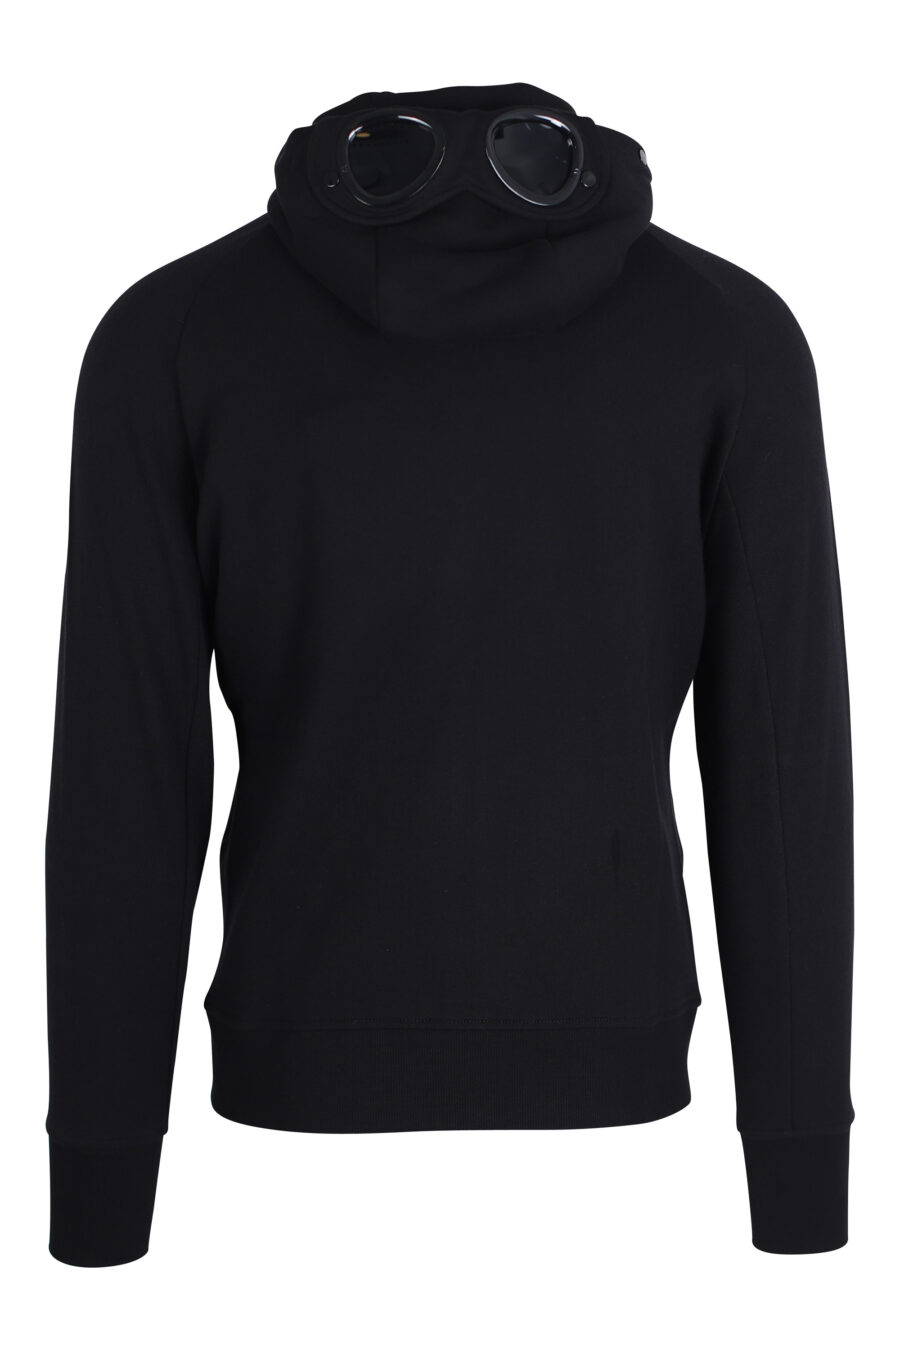 Schwarzes Sweatshirt mit verstellbarer Brillenkapuze - IMG 2436